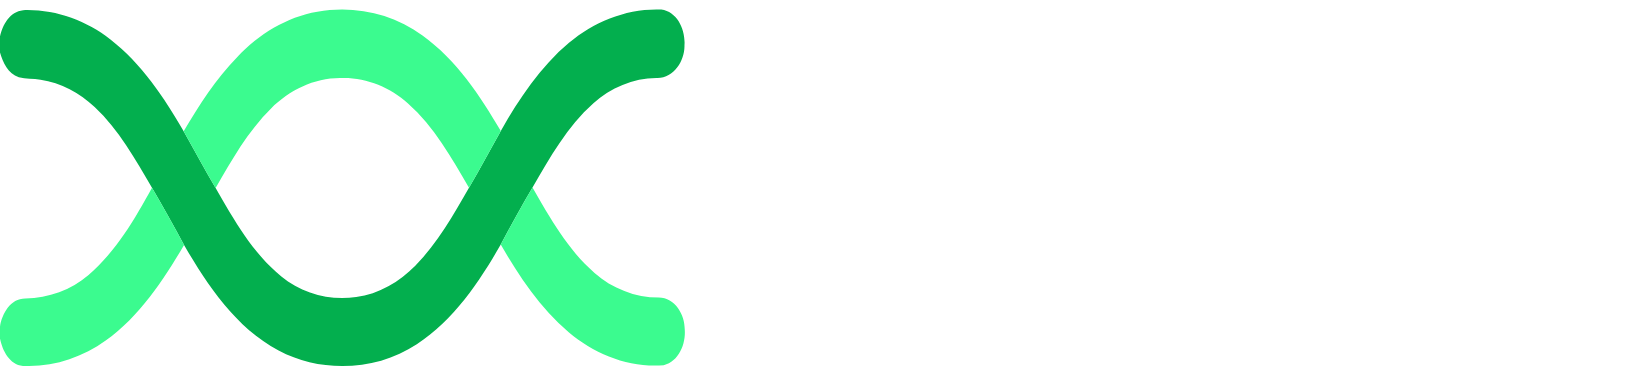 Archaea Energy logo grand pour les fonds sombres (PNG transparent)